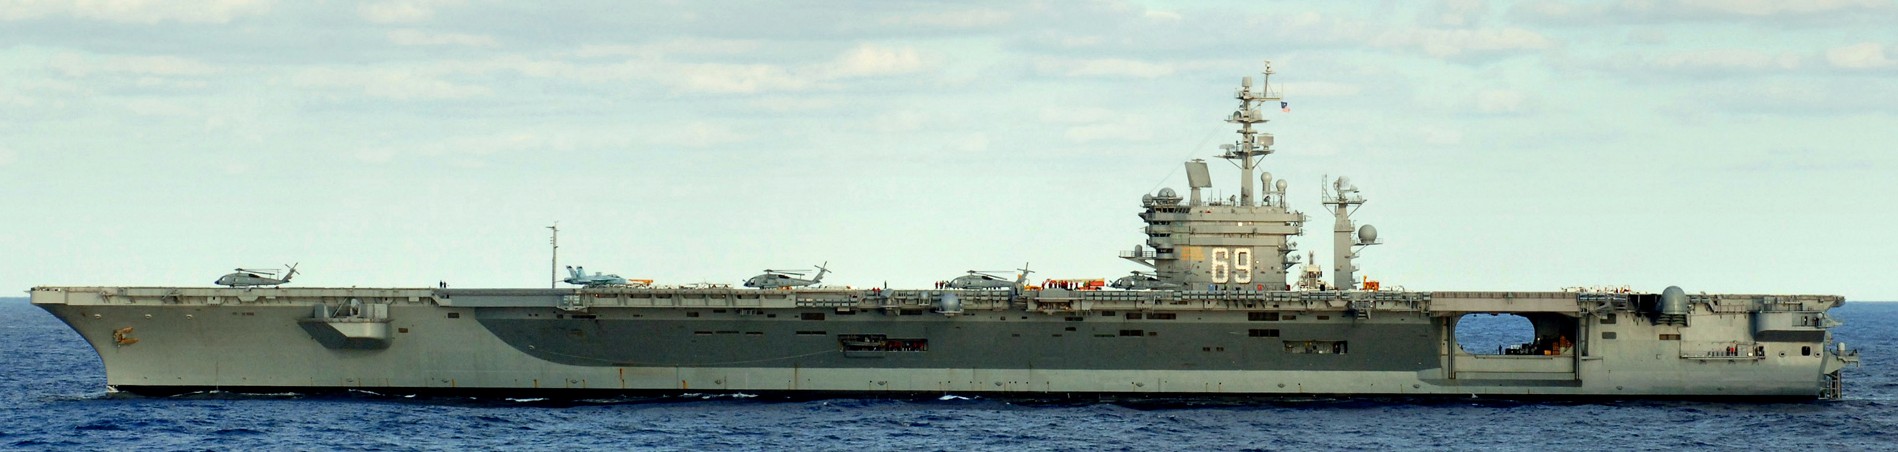 cvn-69 uss dwight d. eisenhower aircraft carrier us navy 219